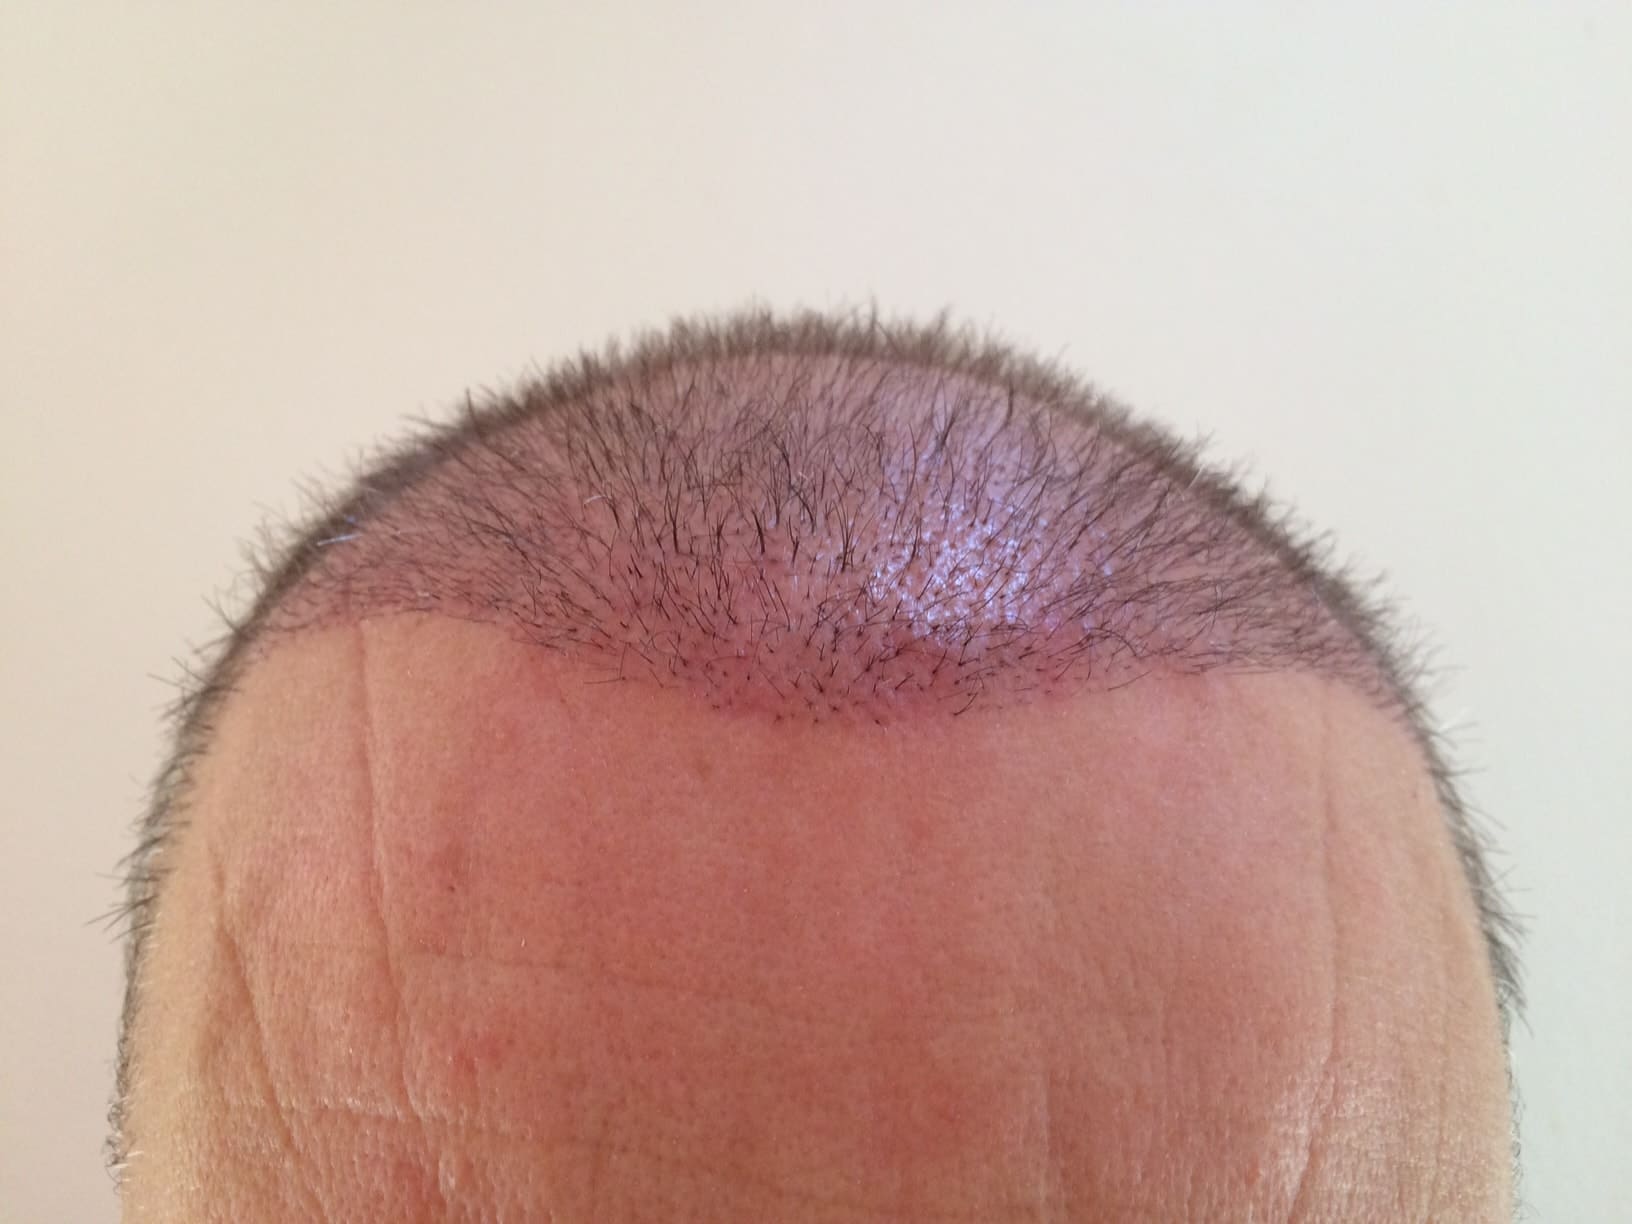 hair-transplantation-3-weeks